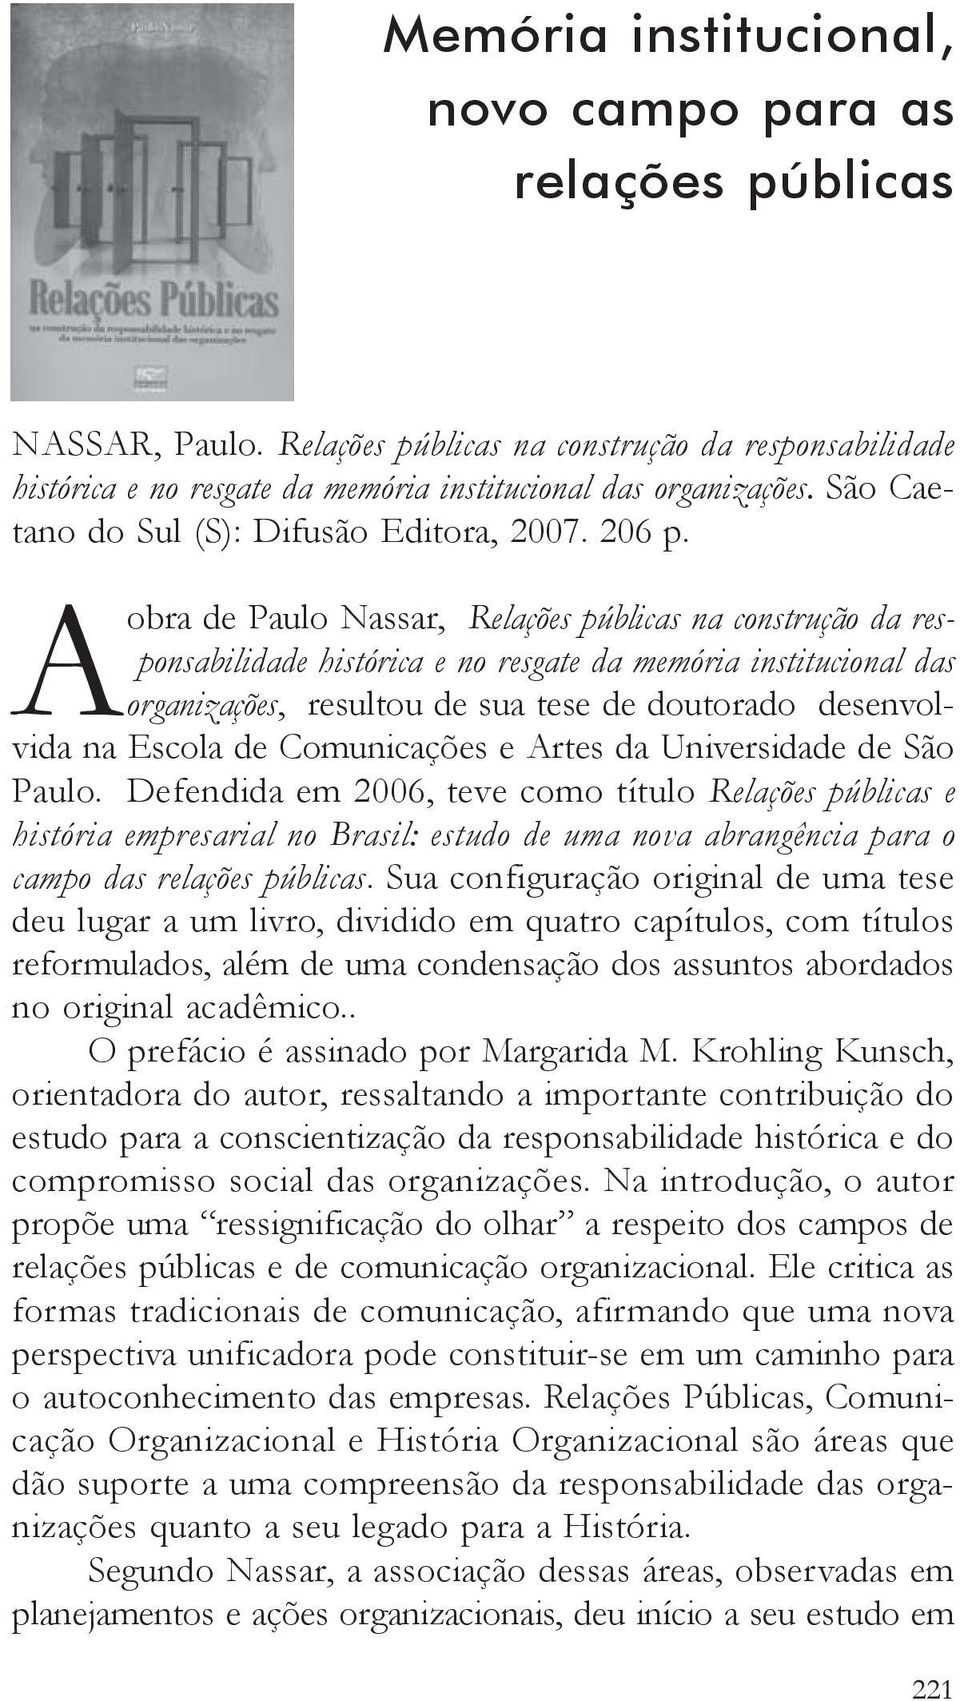 Aobra de Paulo Nassar, Relações públicas na construção da responsabilidade histórica e no resgate da memória institucional das organizações, resultou de sua tese de doutorado desenvolvida na Escola